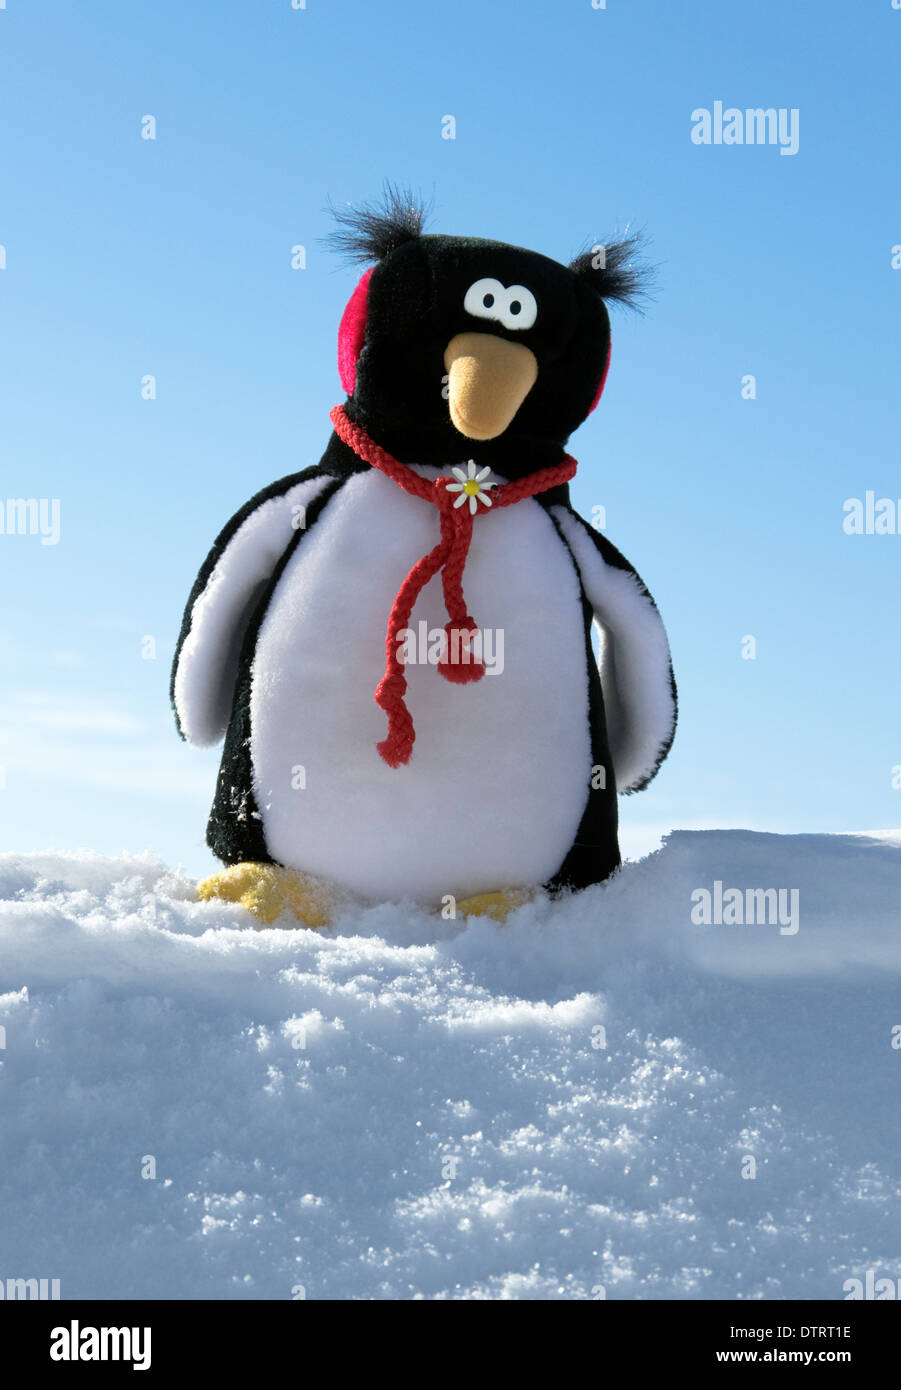 Pinguino giocattolo di peluche sulla neve Foto Stock